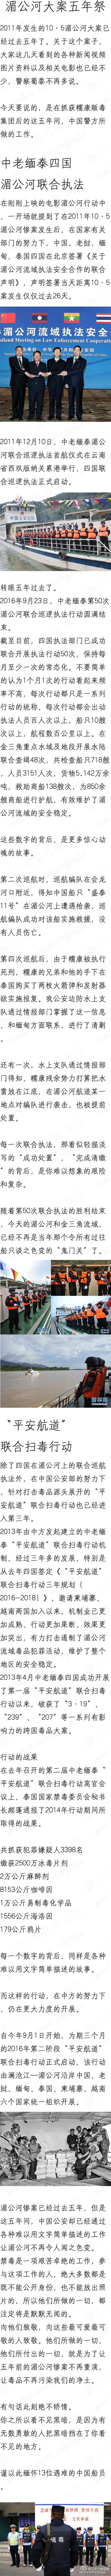 湄公河大案5周年:这5年中国警方做了啥?